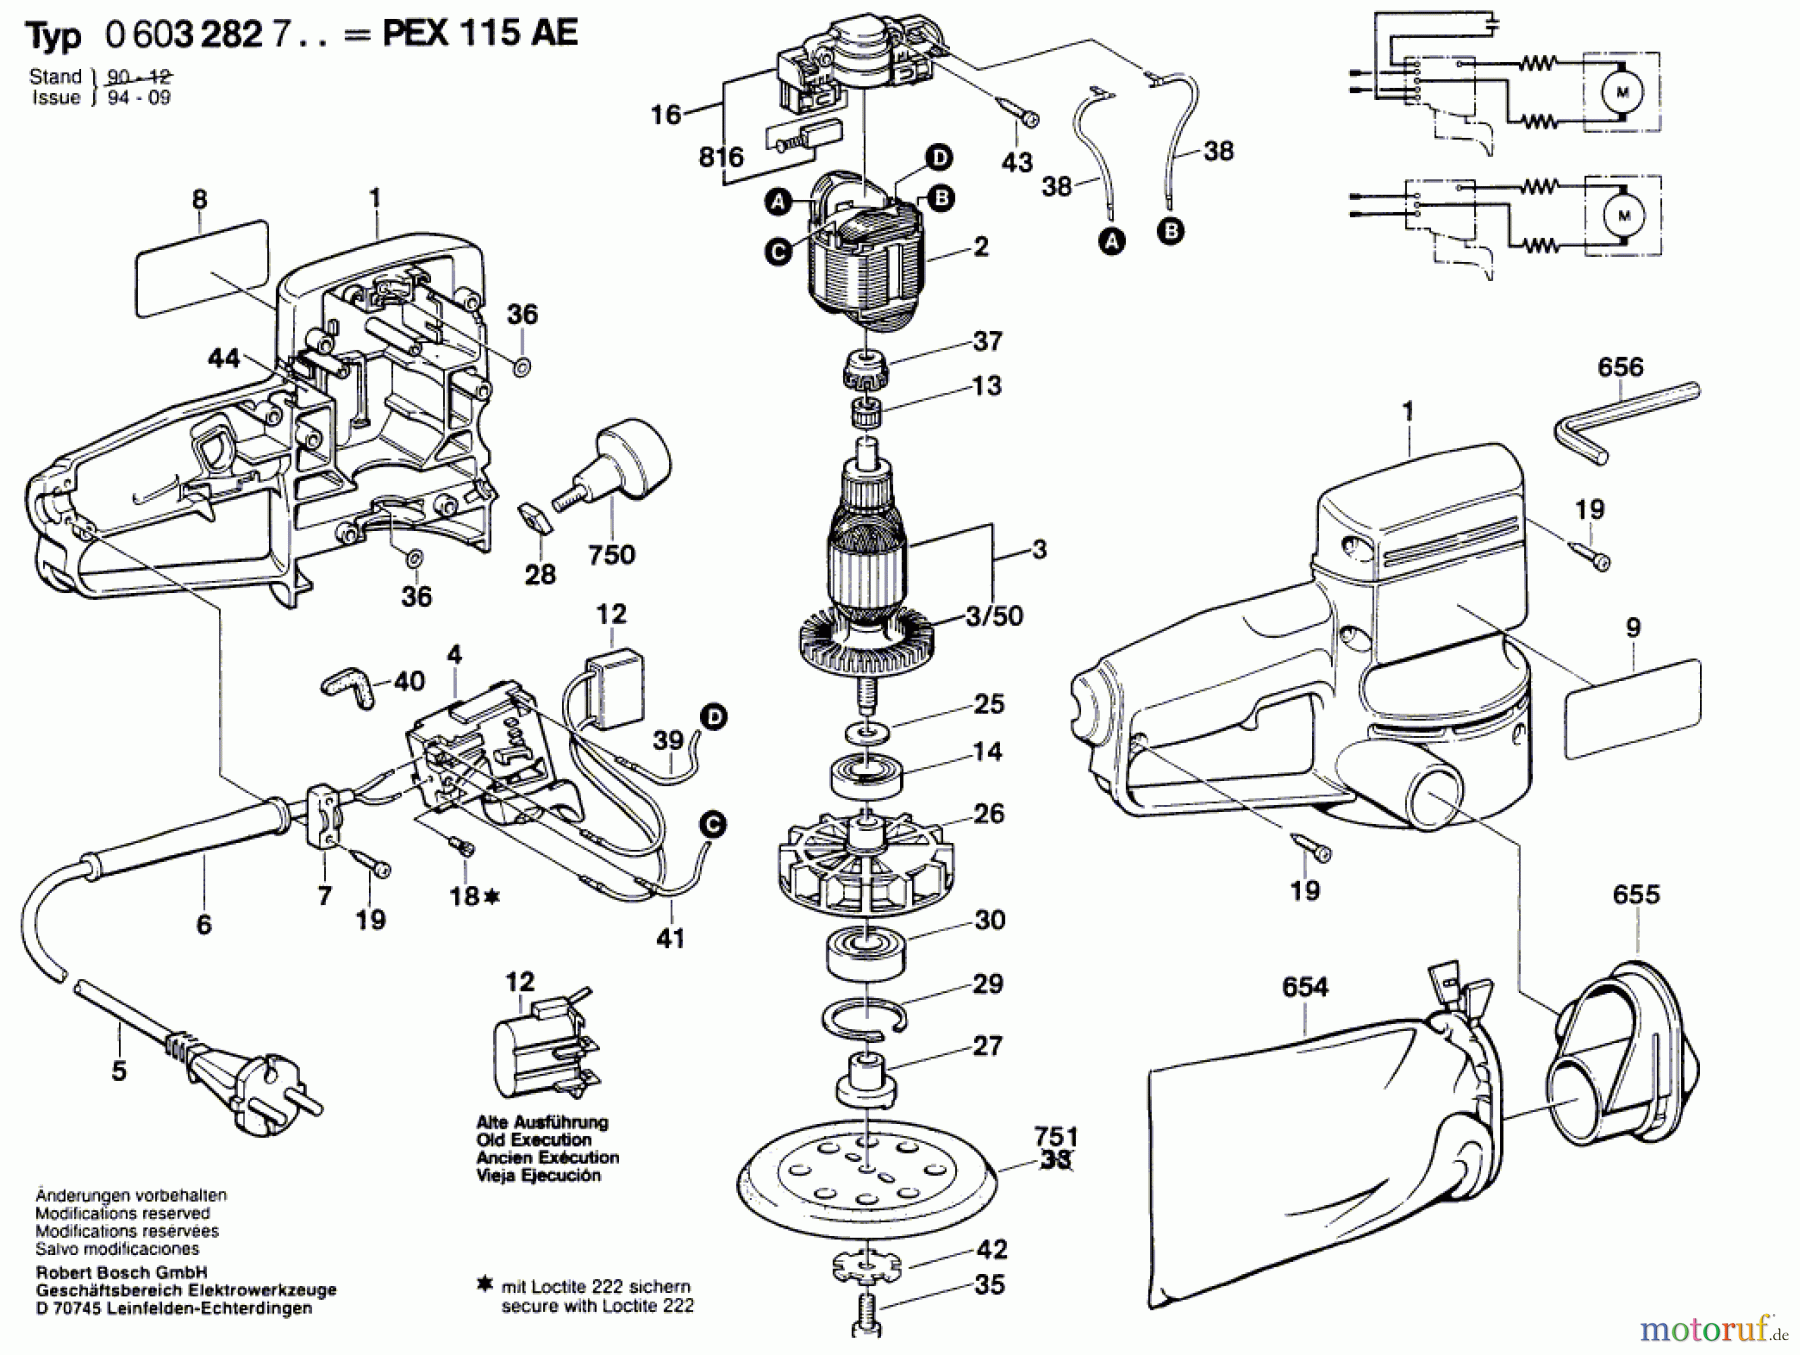  Bosch Werkzeug Exzenterschleifer PEX 115 AE Seite 1